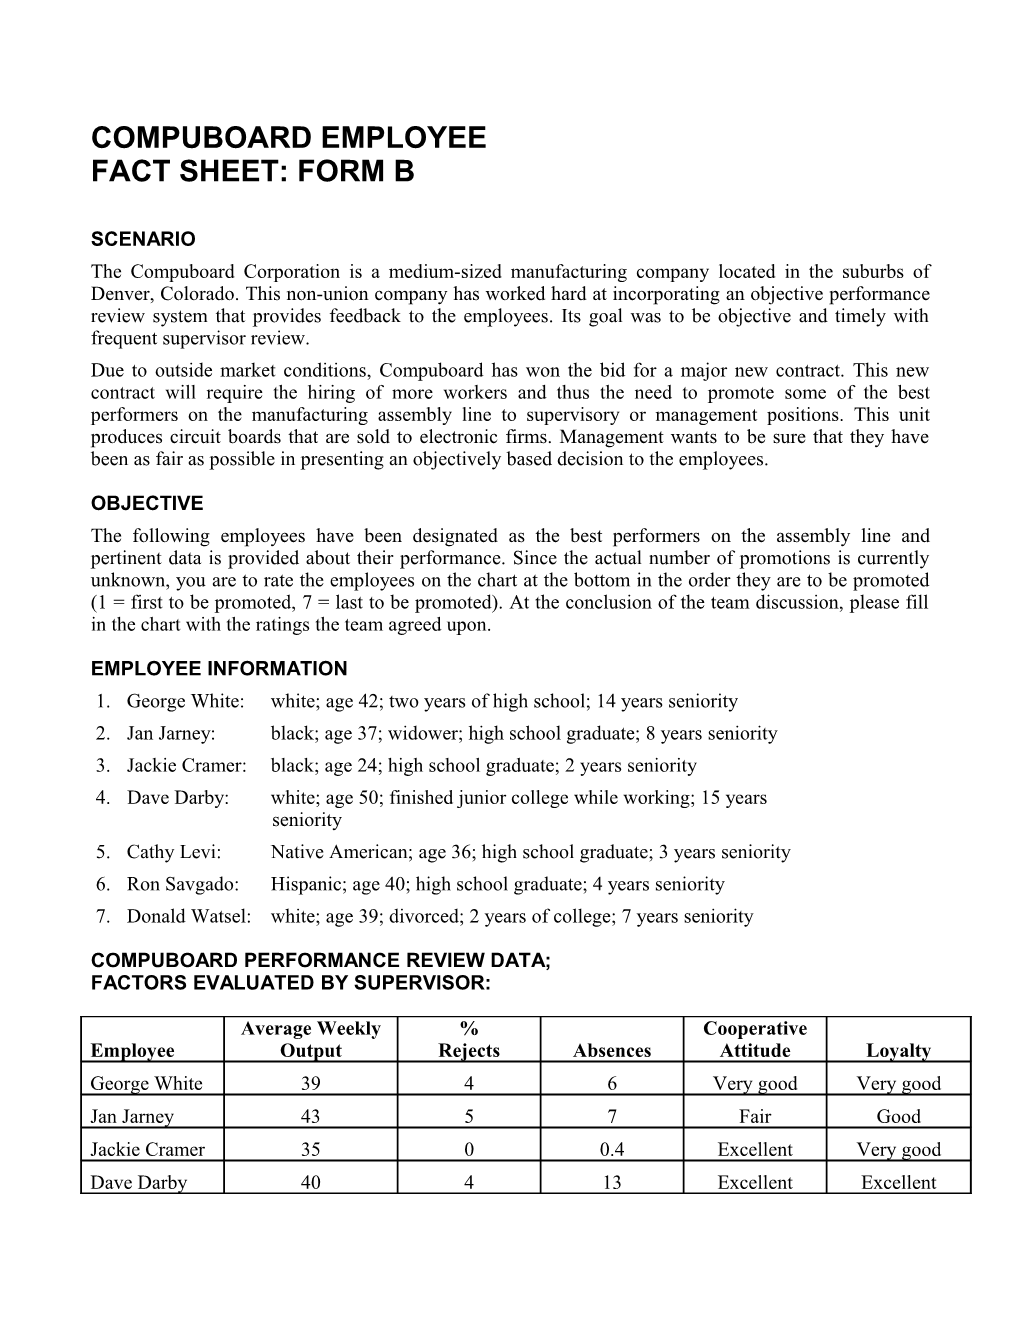 Compuboard Employee Fact Sheet: Form B